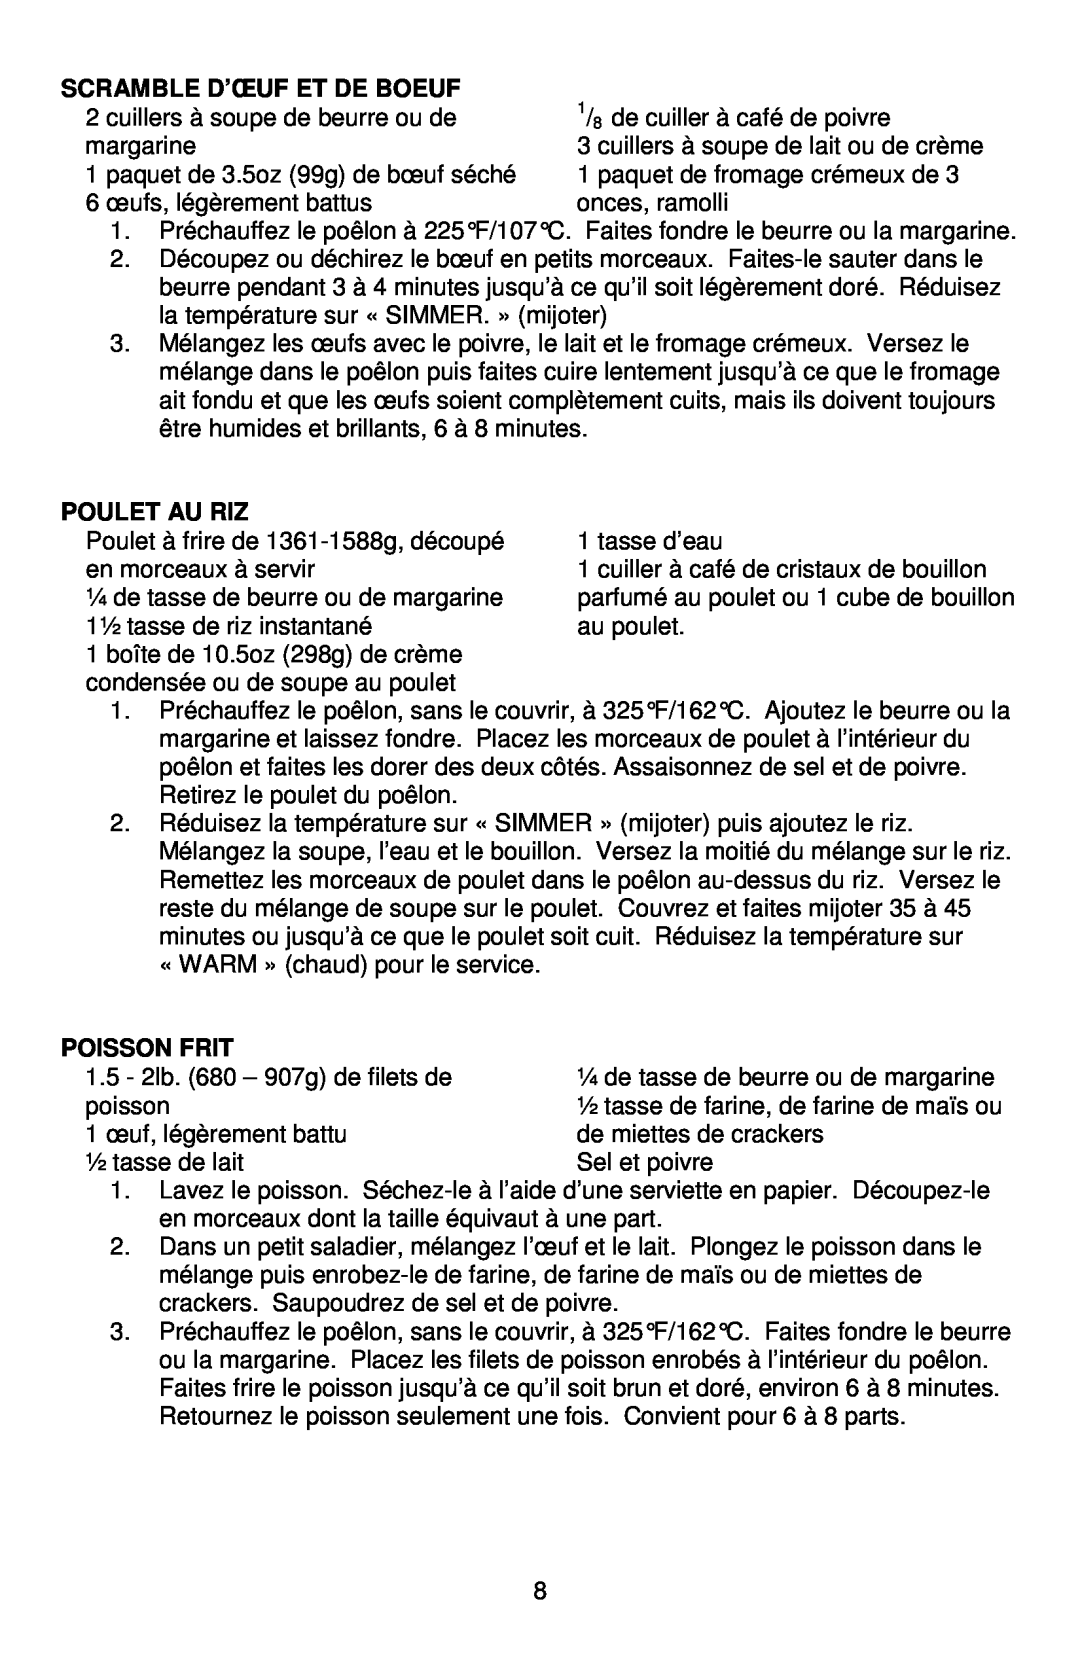 West Bend L5791B, 72212 instruction manual Scramble D’Œuf Et De Boeuf, Poulet Au Riz, Poisson Frit 